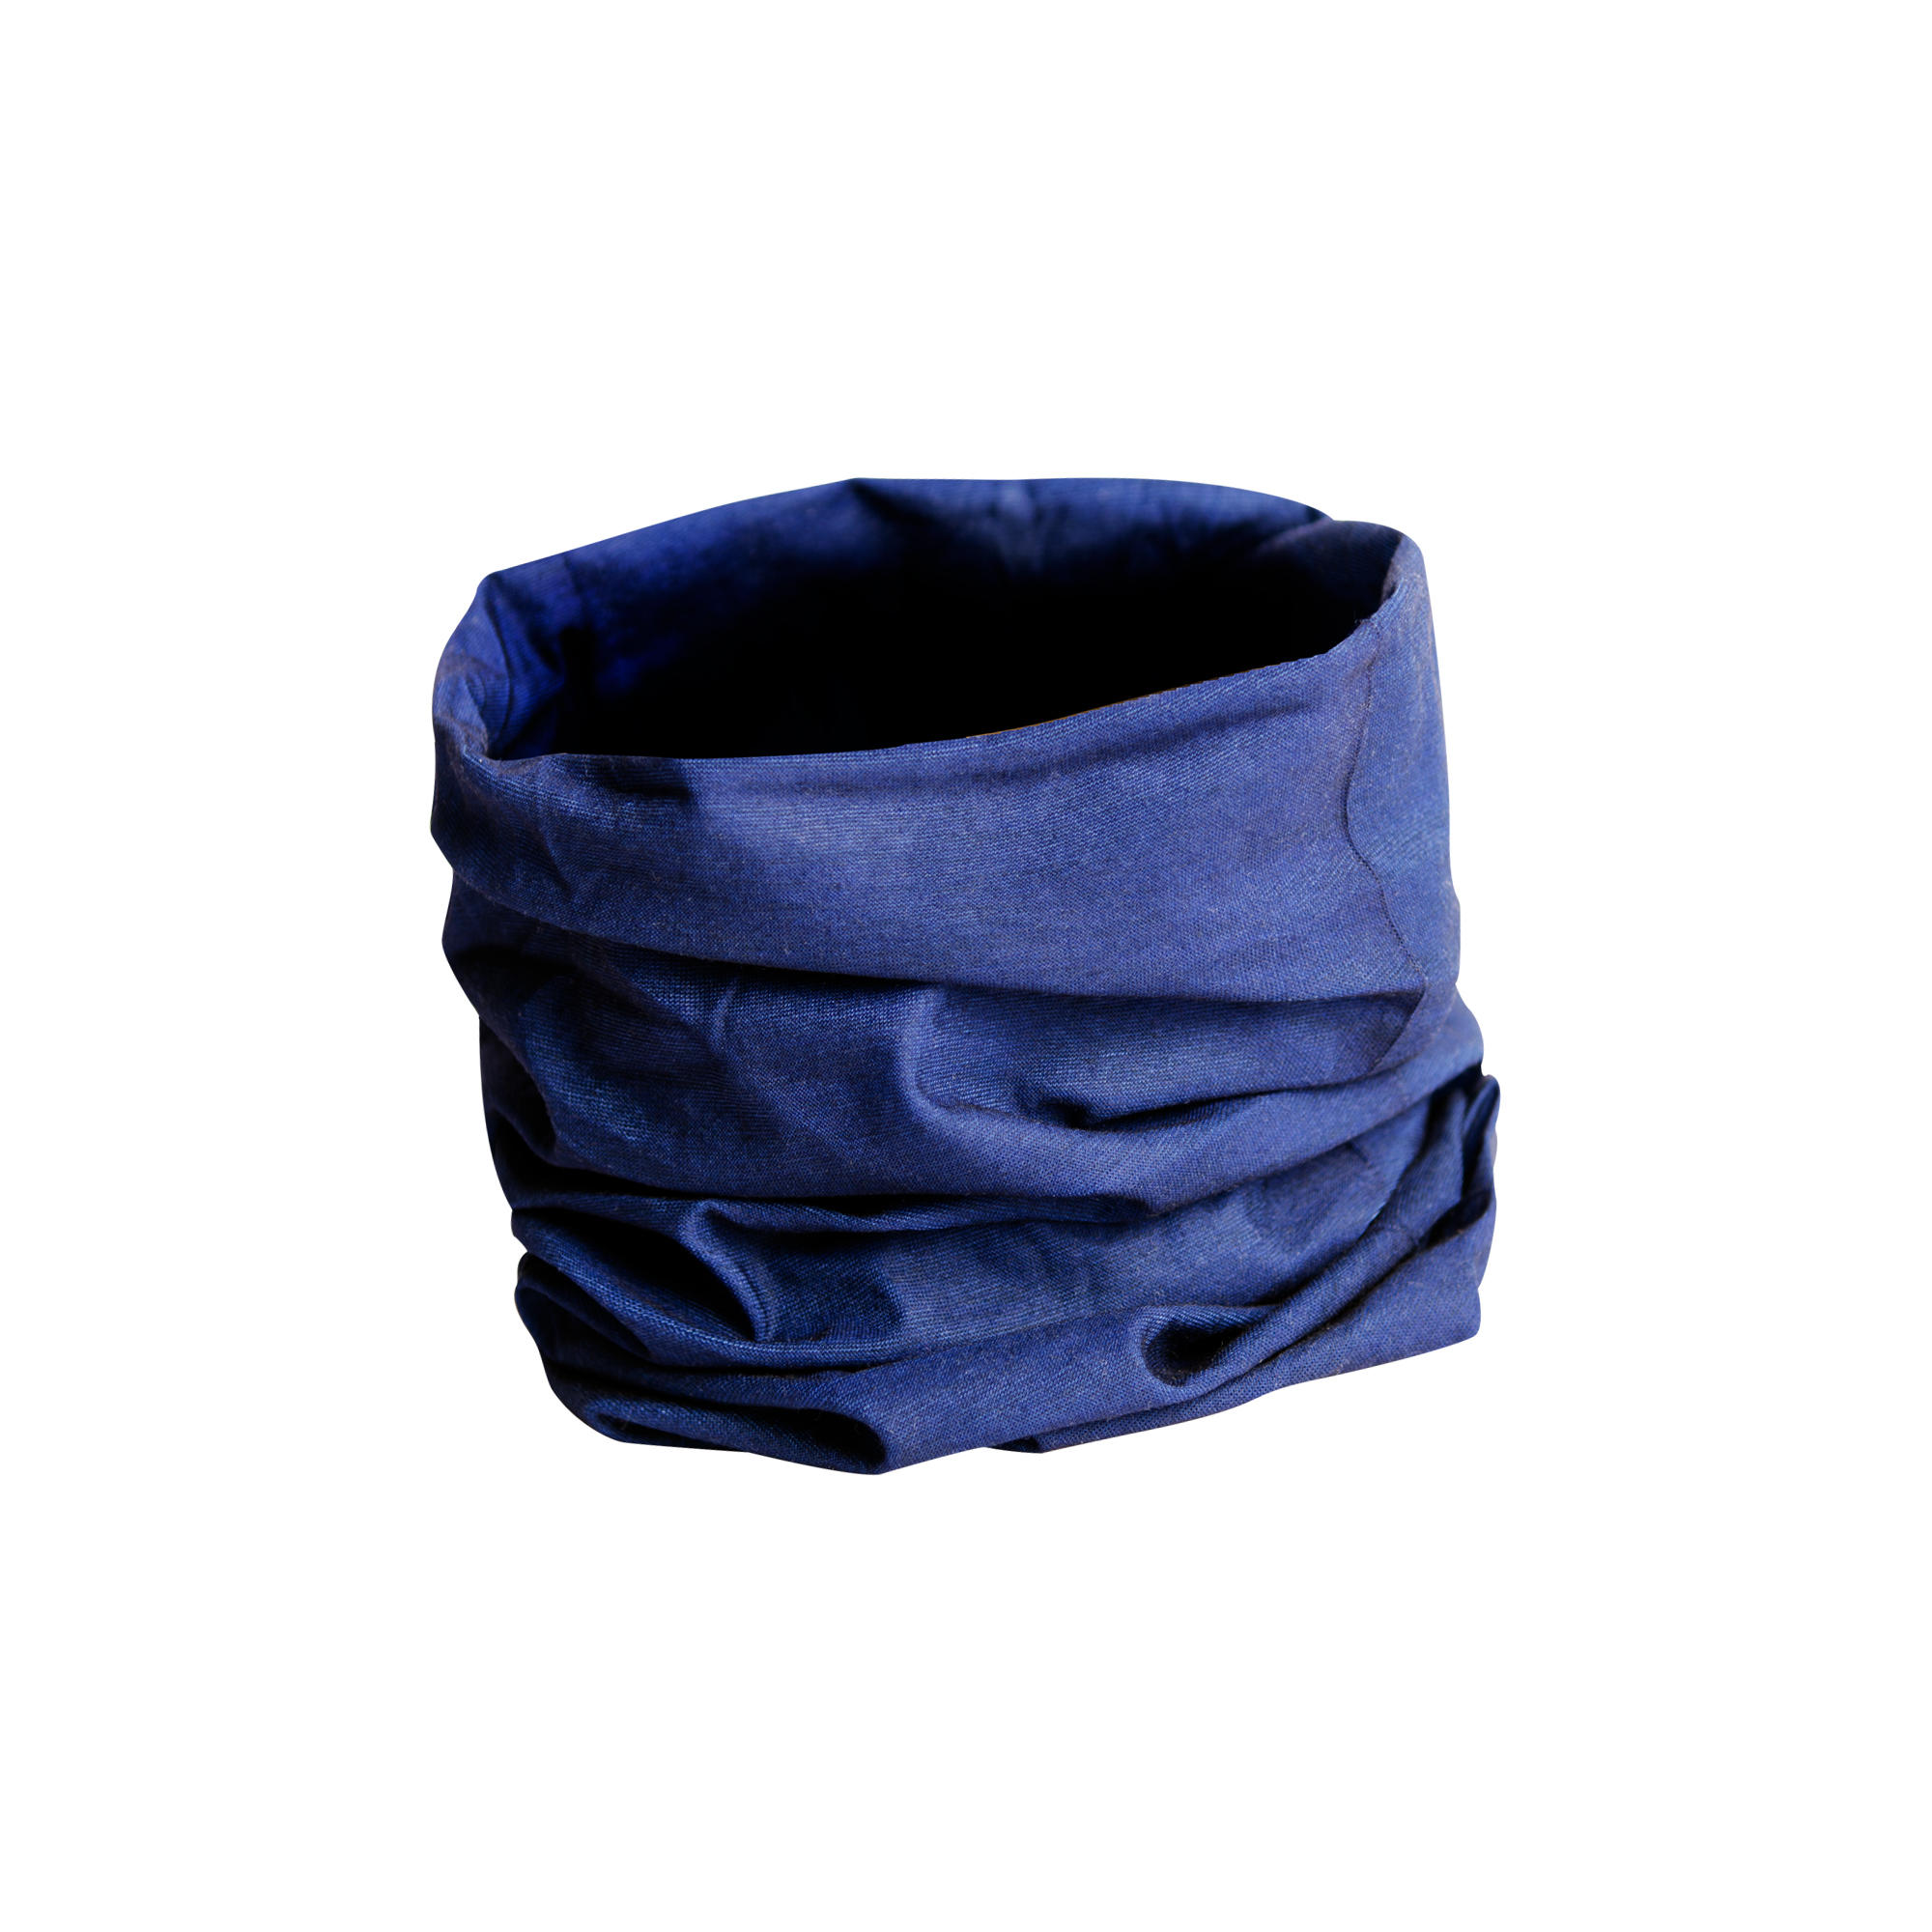 KIPRUN KIPRUN Unisex running neck warmer/multi-purpose headband - Navy Blue